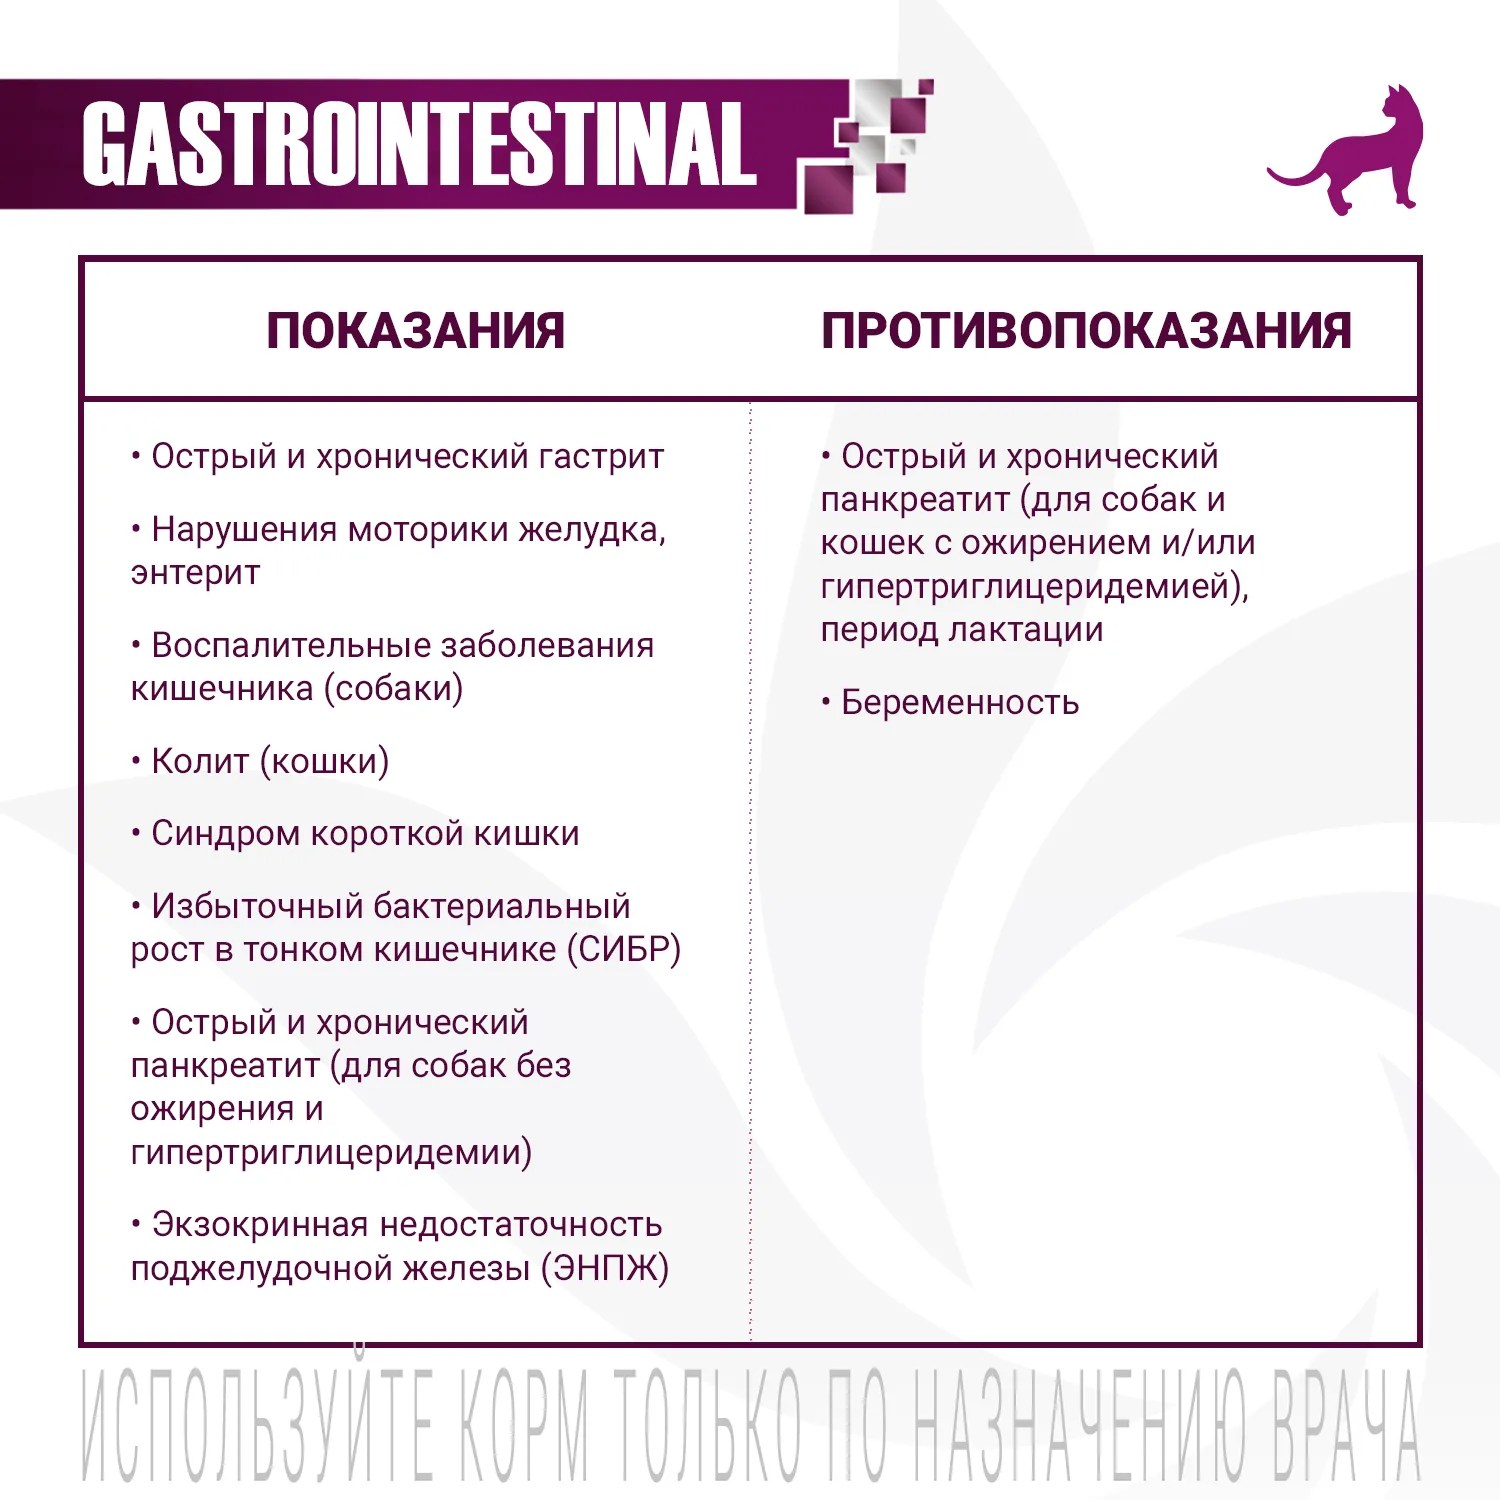 Ветеринарная диета Monge VetSolution Cat Gastrointestinal гастро интестинал для кошек при заболеваниях ЖКТ 400 г